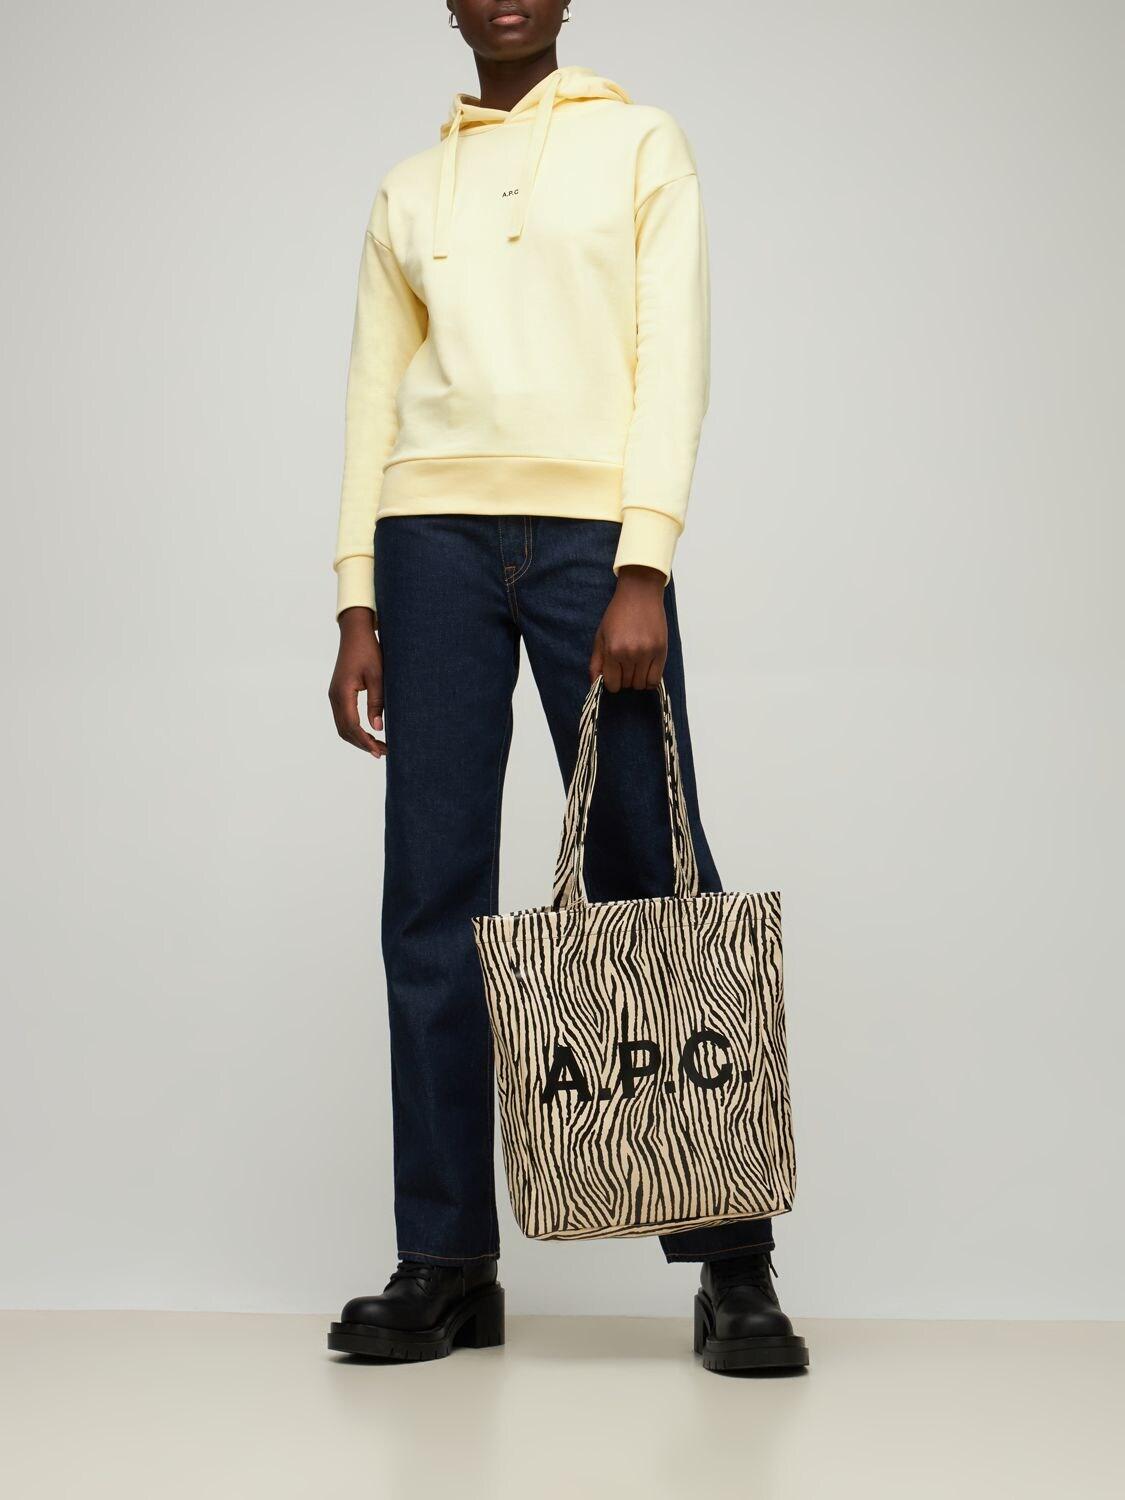 Men's 'lou' Tote Bag by A.p.c.